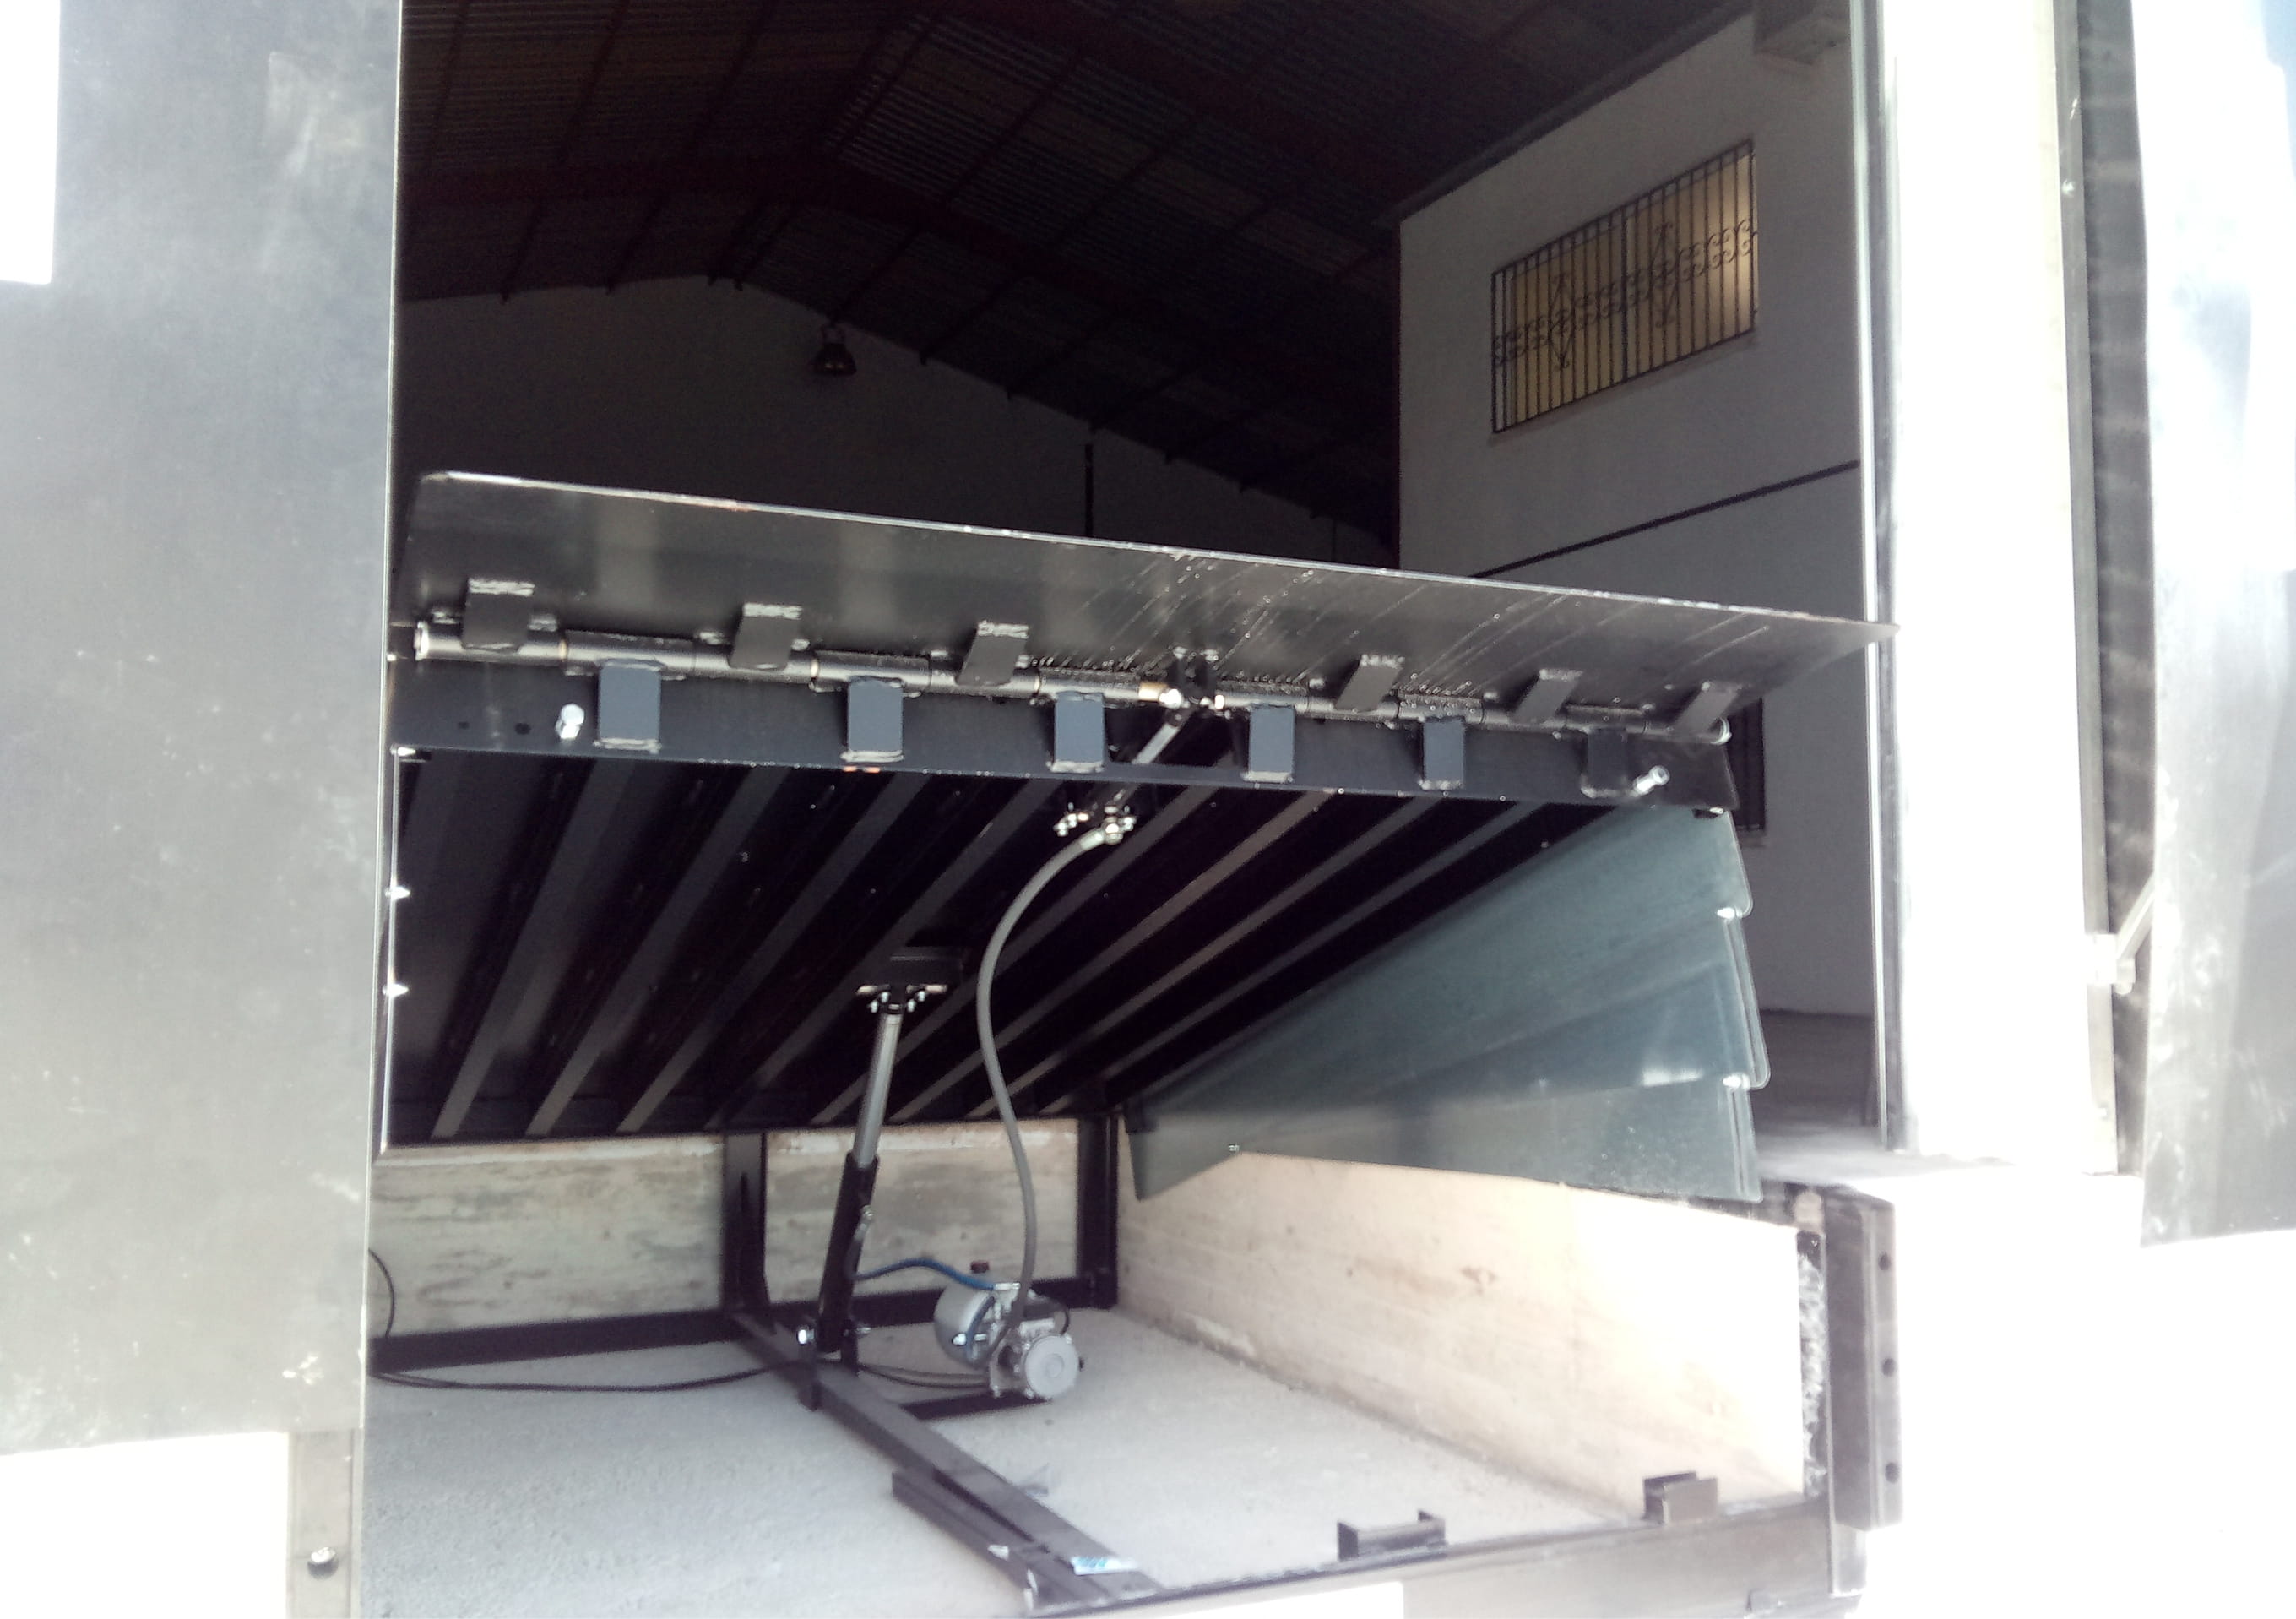 Ramps for loading docks